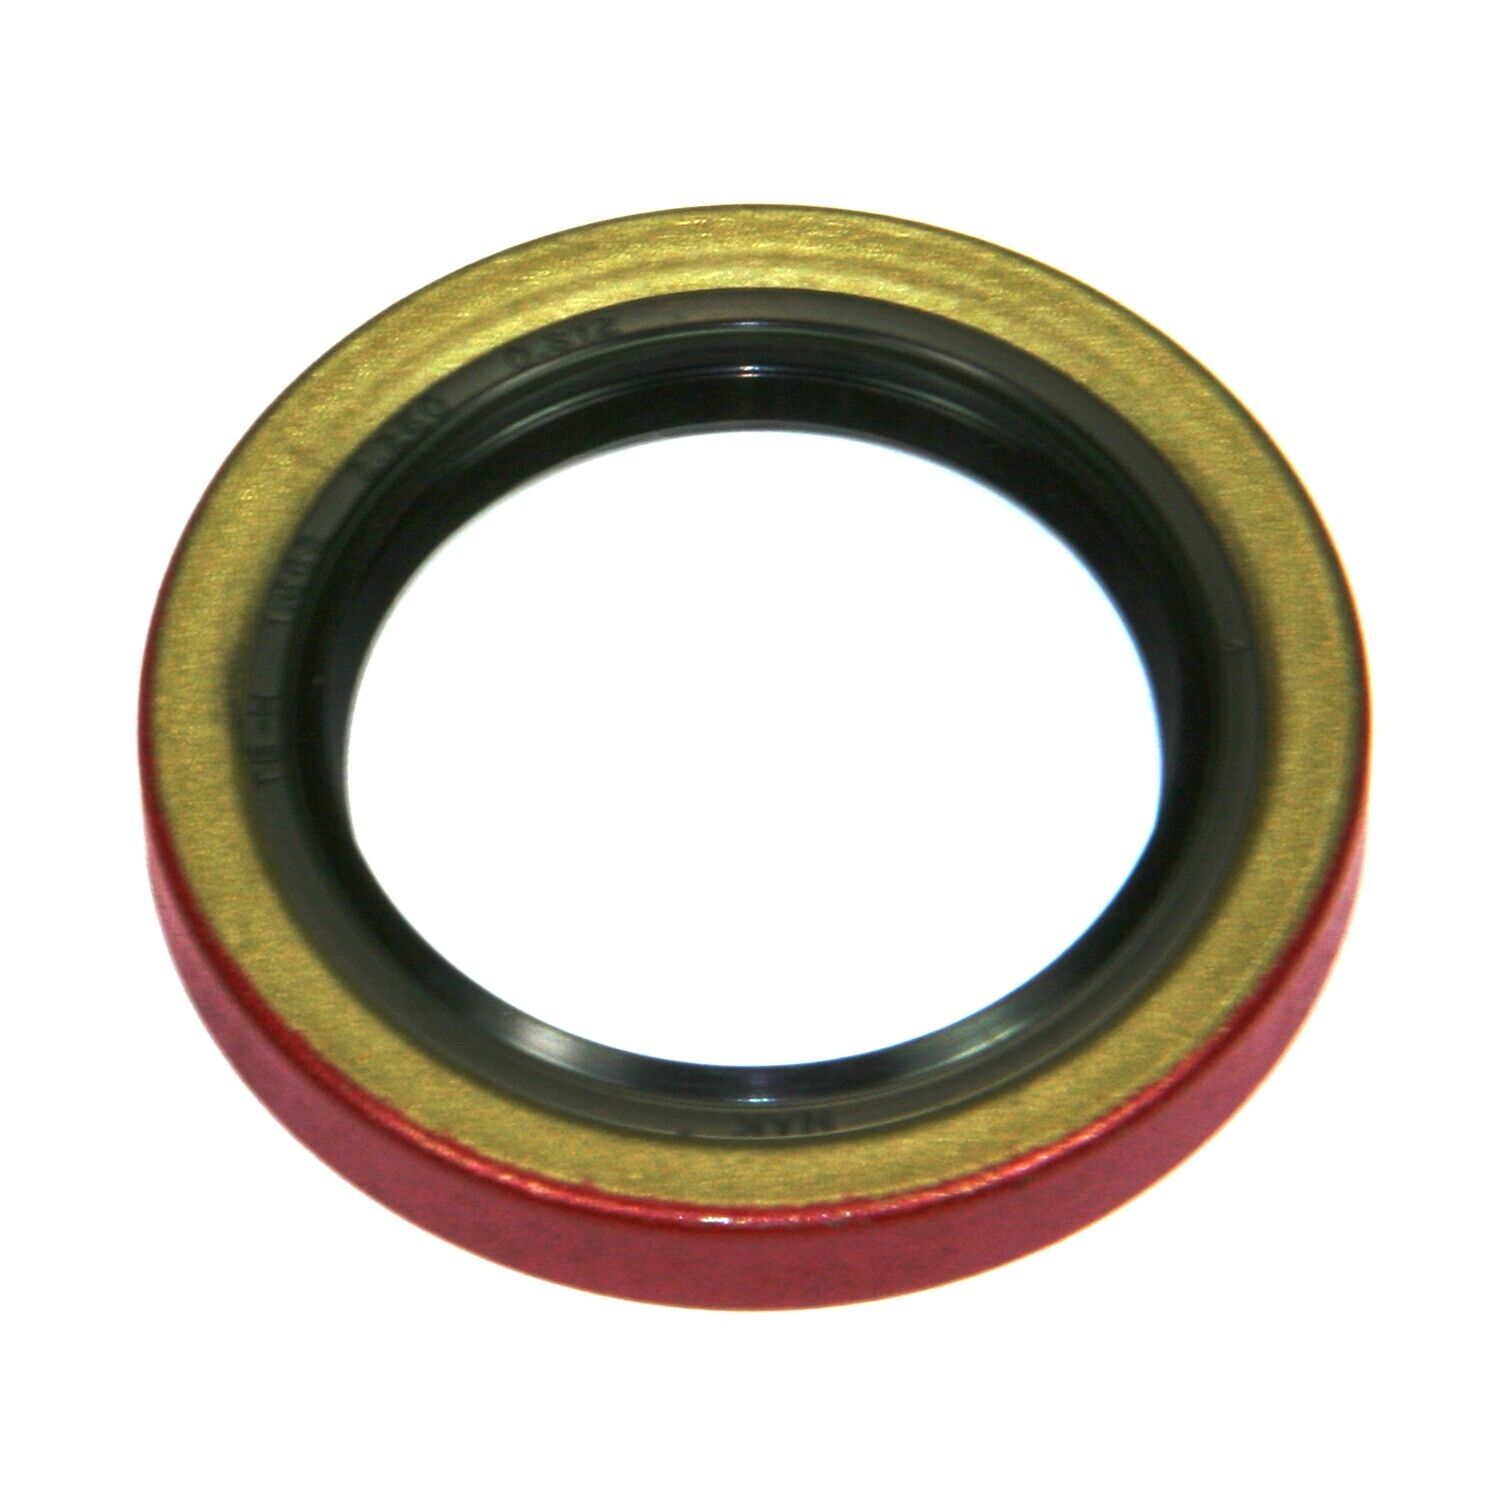 Centric Wheel Seal for 124, Tuscan, Vixen 417.04002